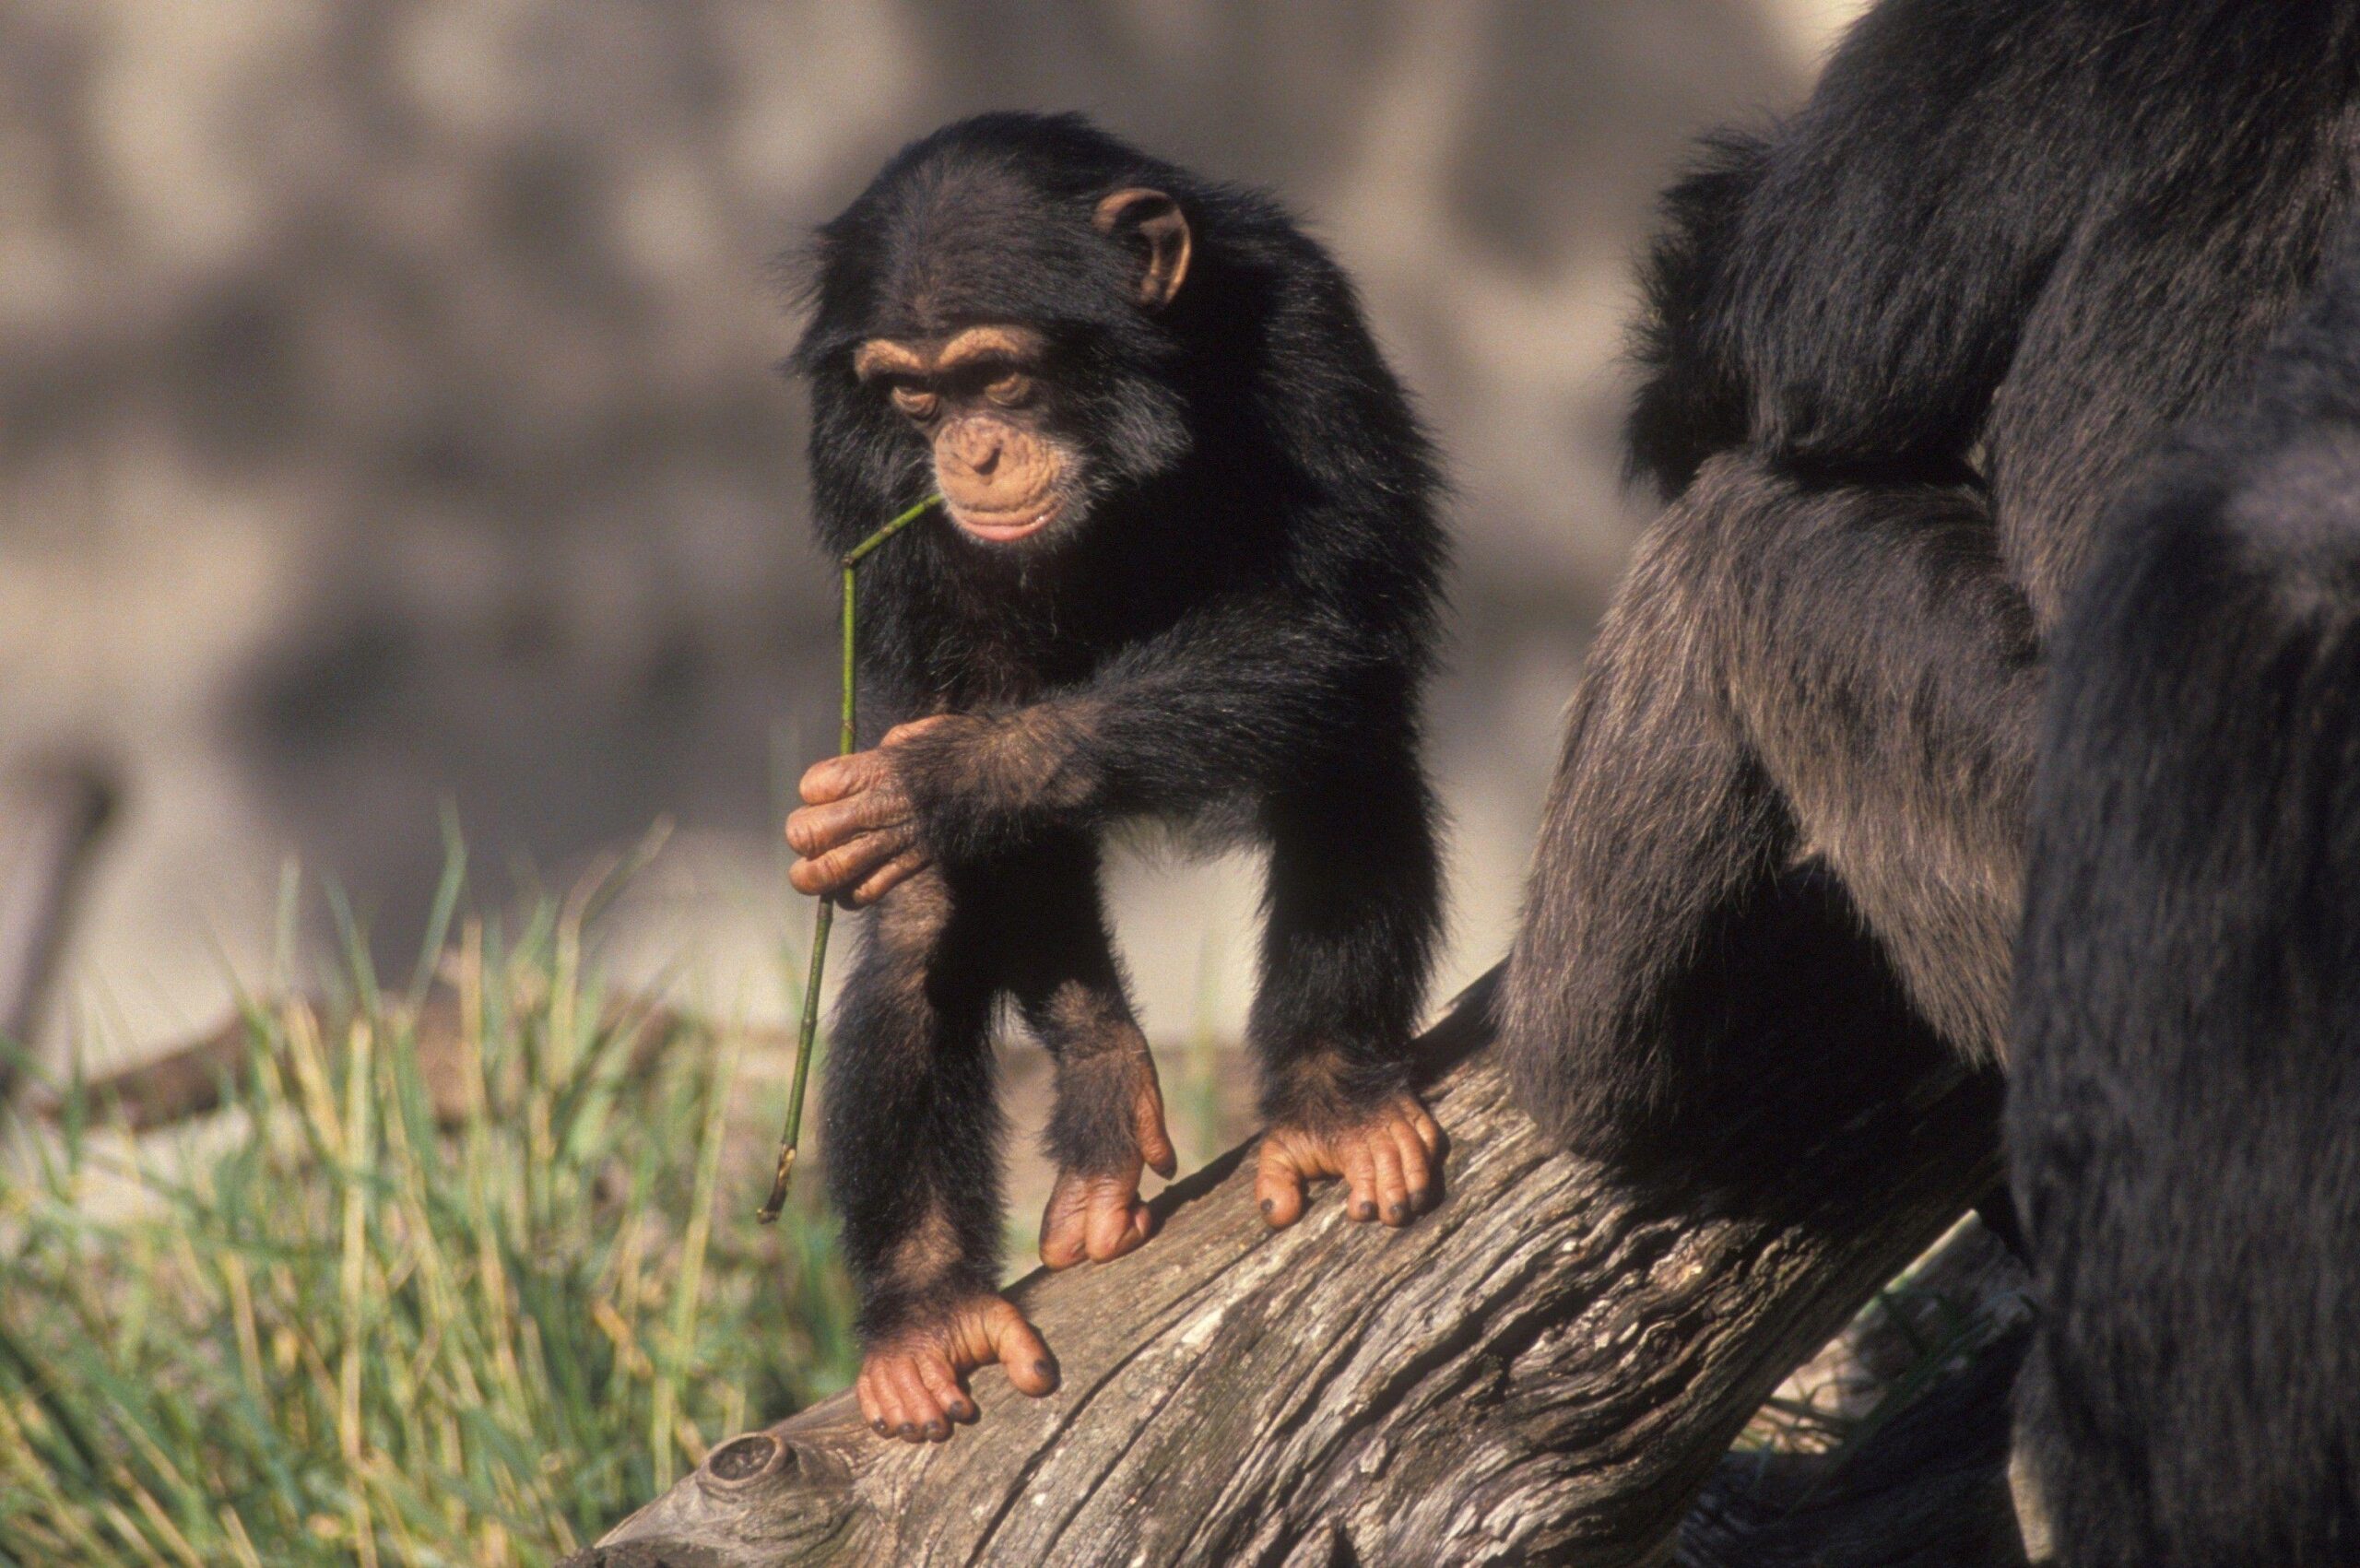 Chimpanzee Pc Wallpaper, Chimpanzee, Animal